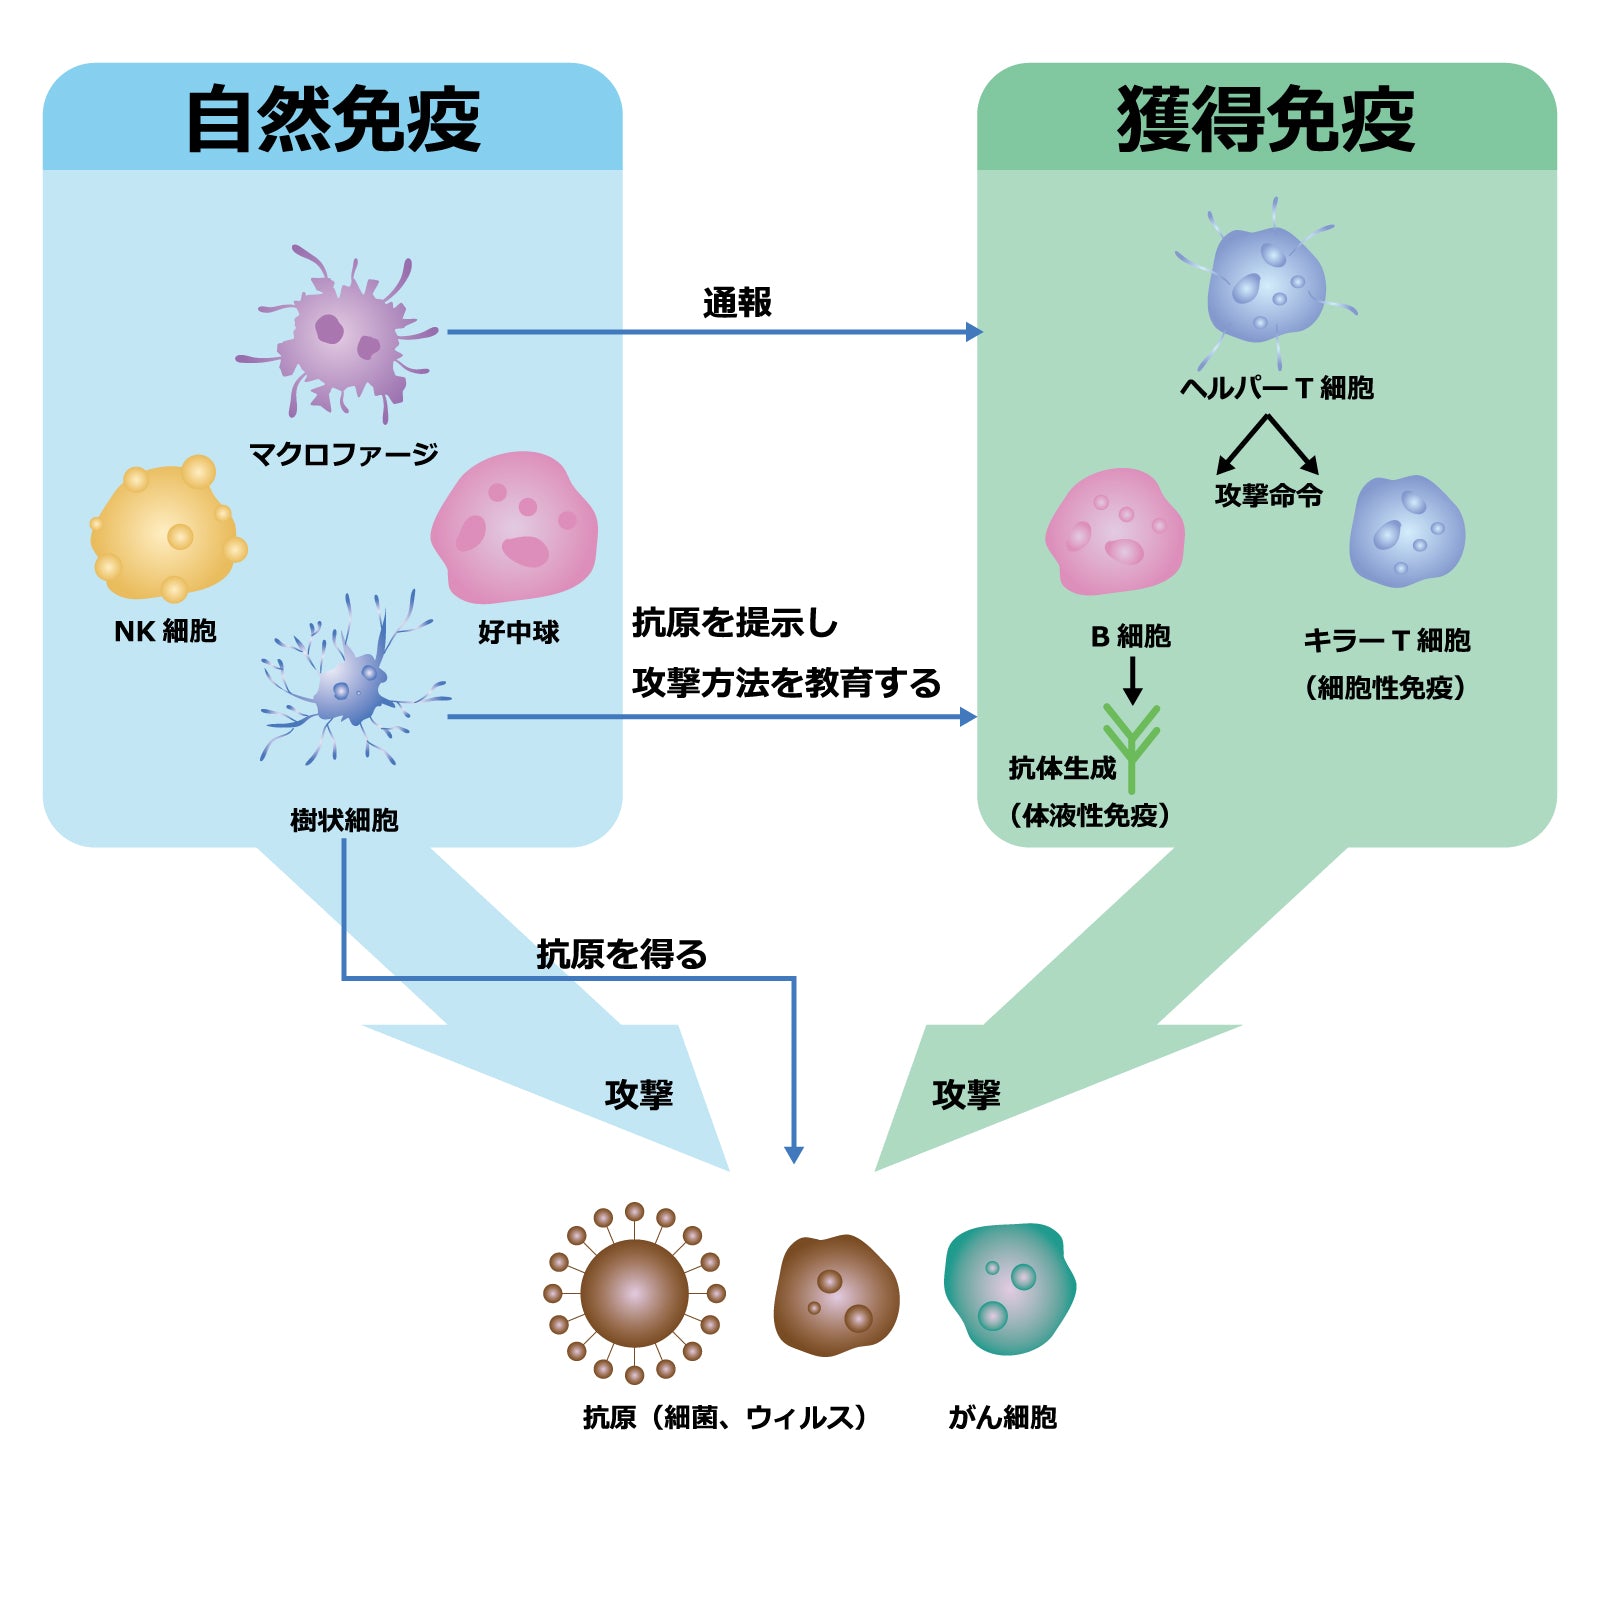 自然免疫と獲得免疫のイメージ画像